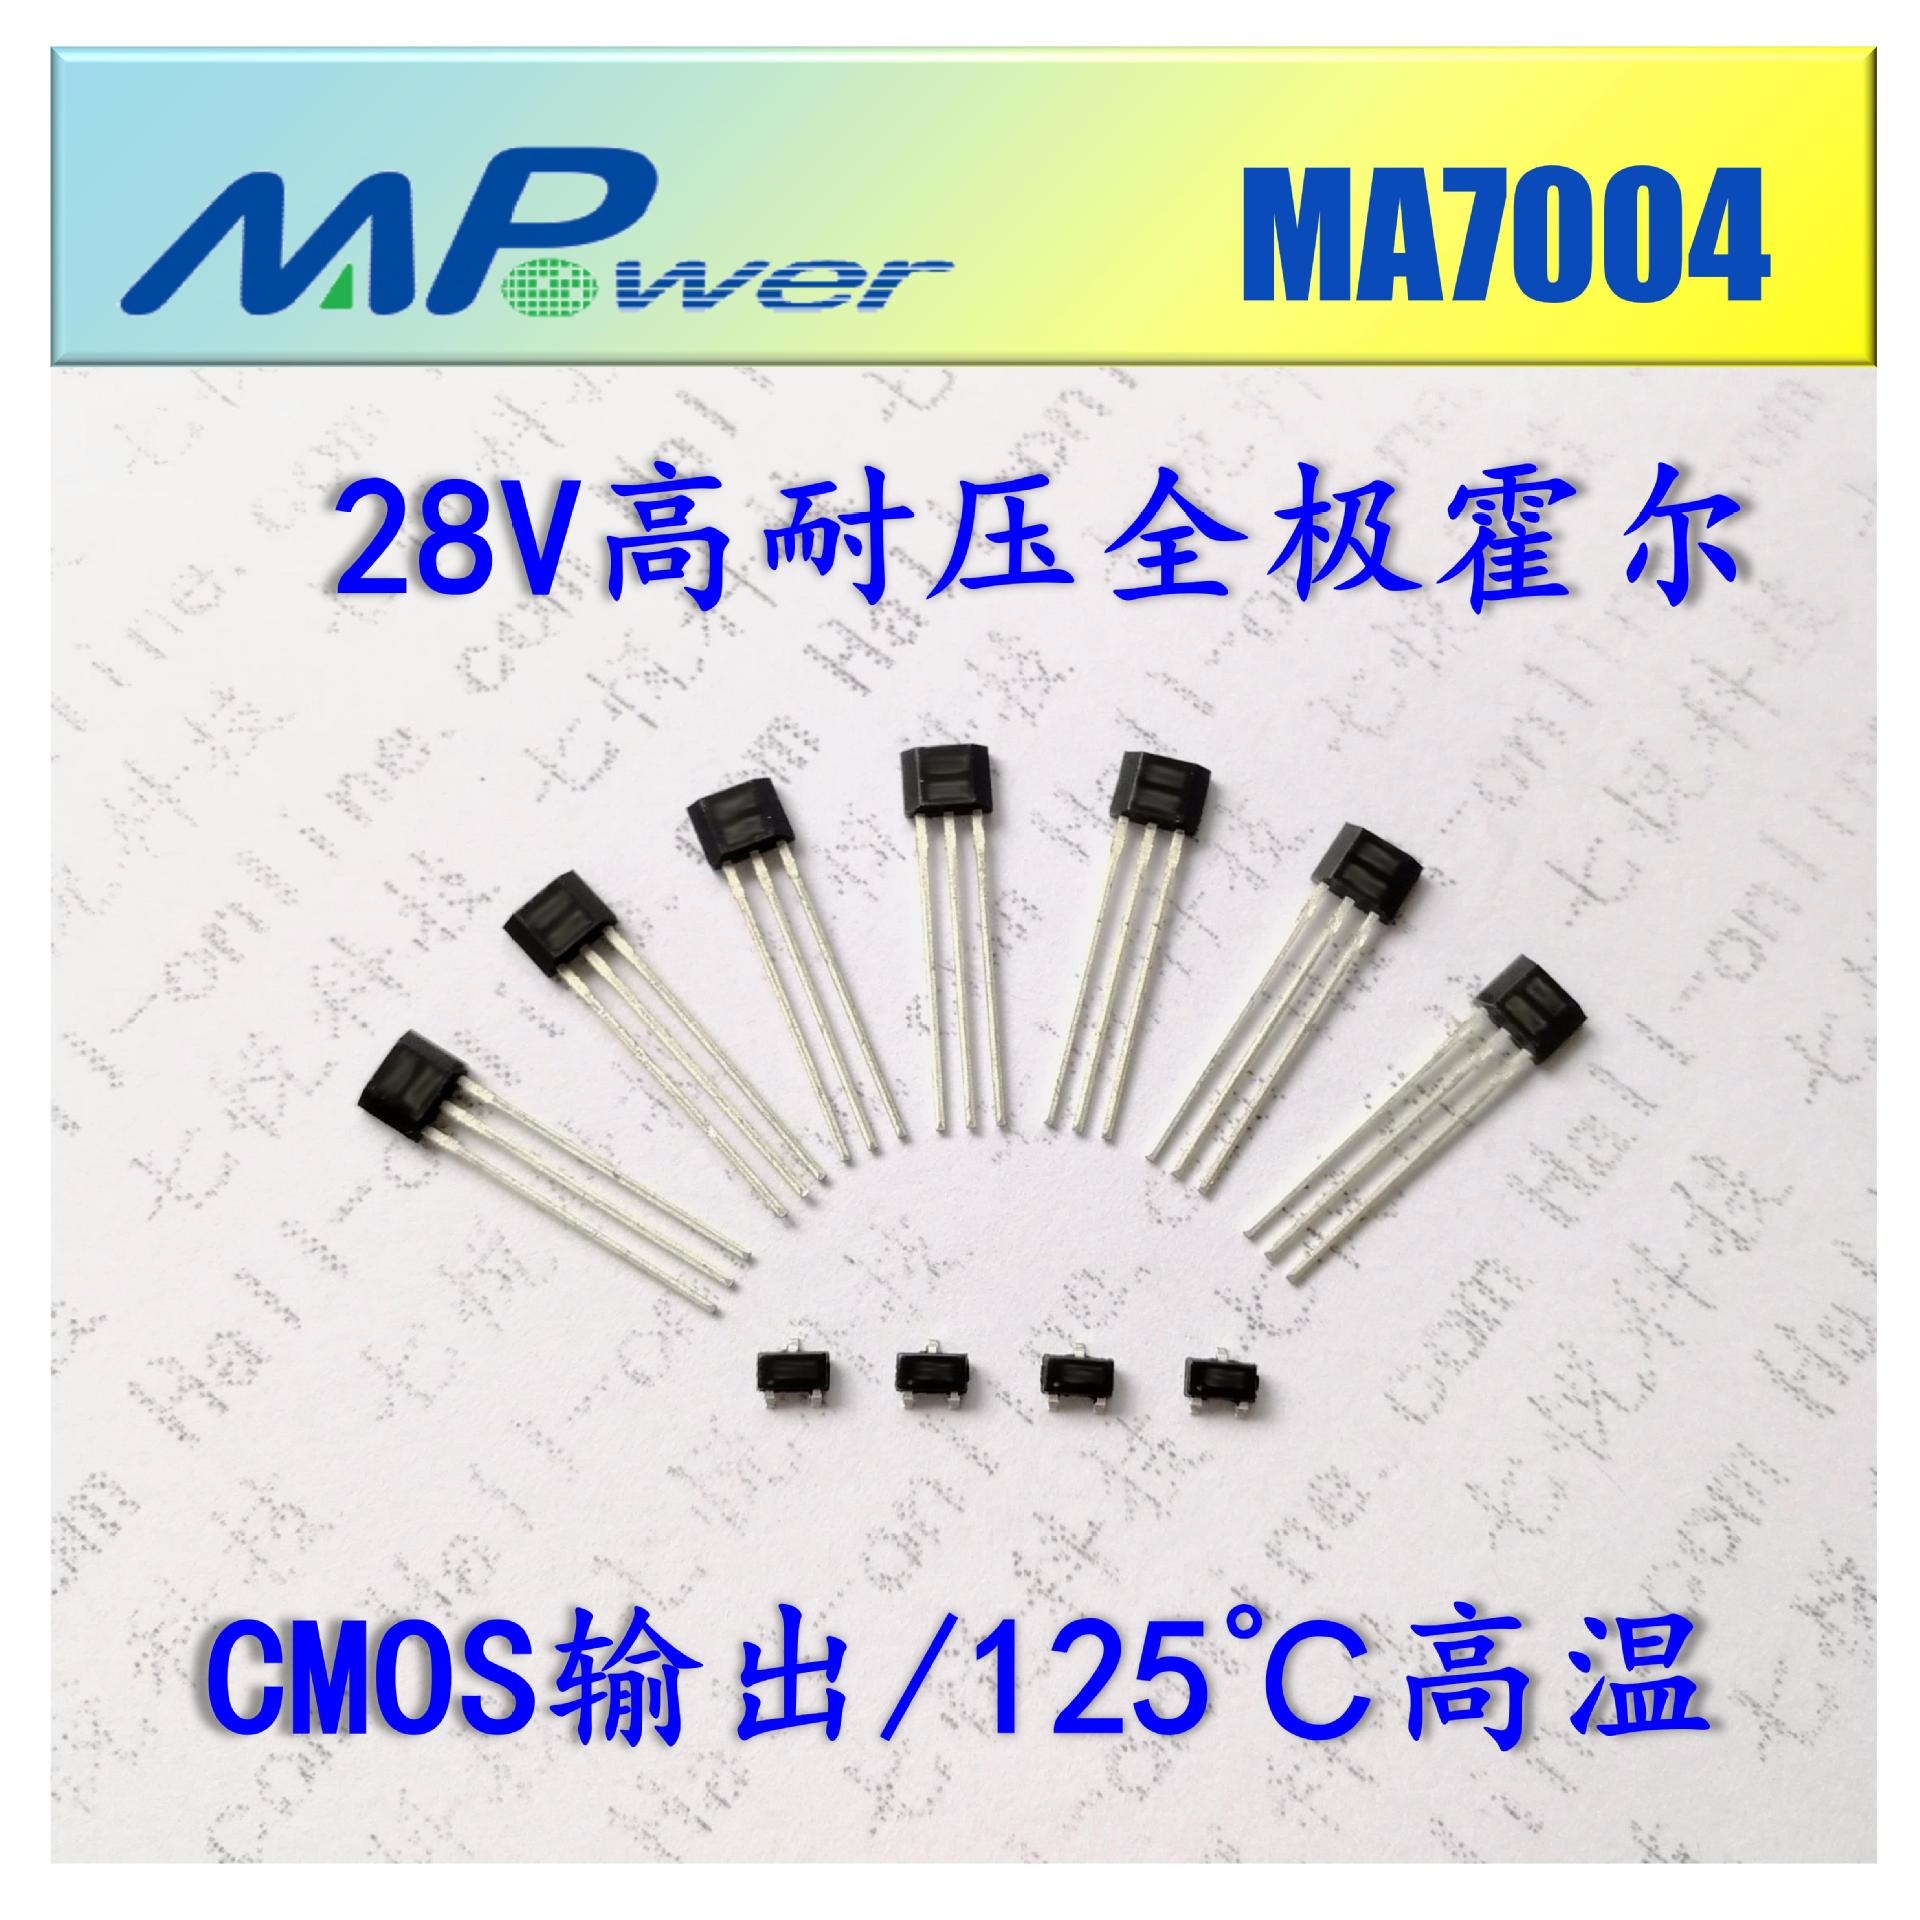 MA7004 广东深圳现货供应 不会掉的呼啦圈 智能呼啦圈 专用 低功耗测速 全极霍尔开关 霍尔元件